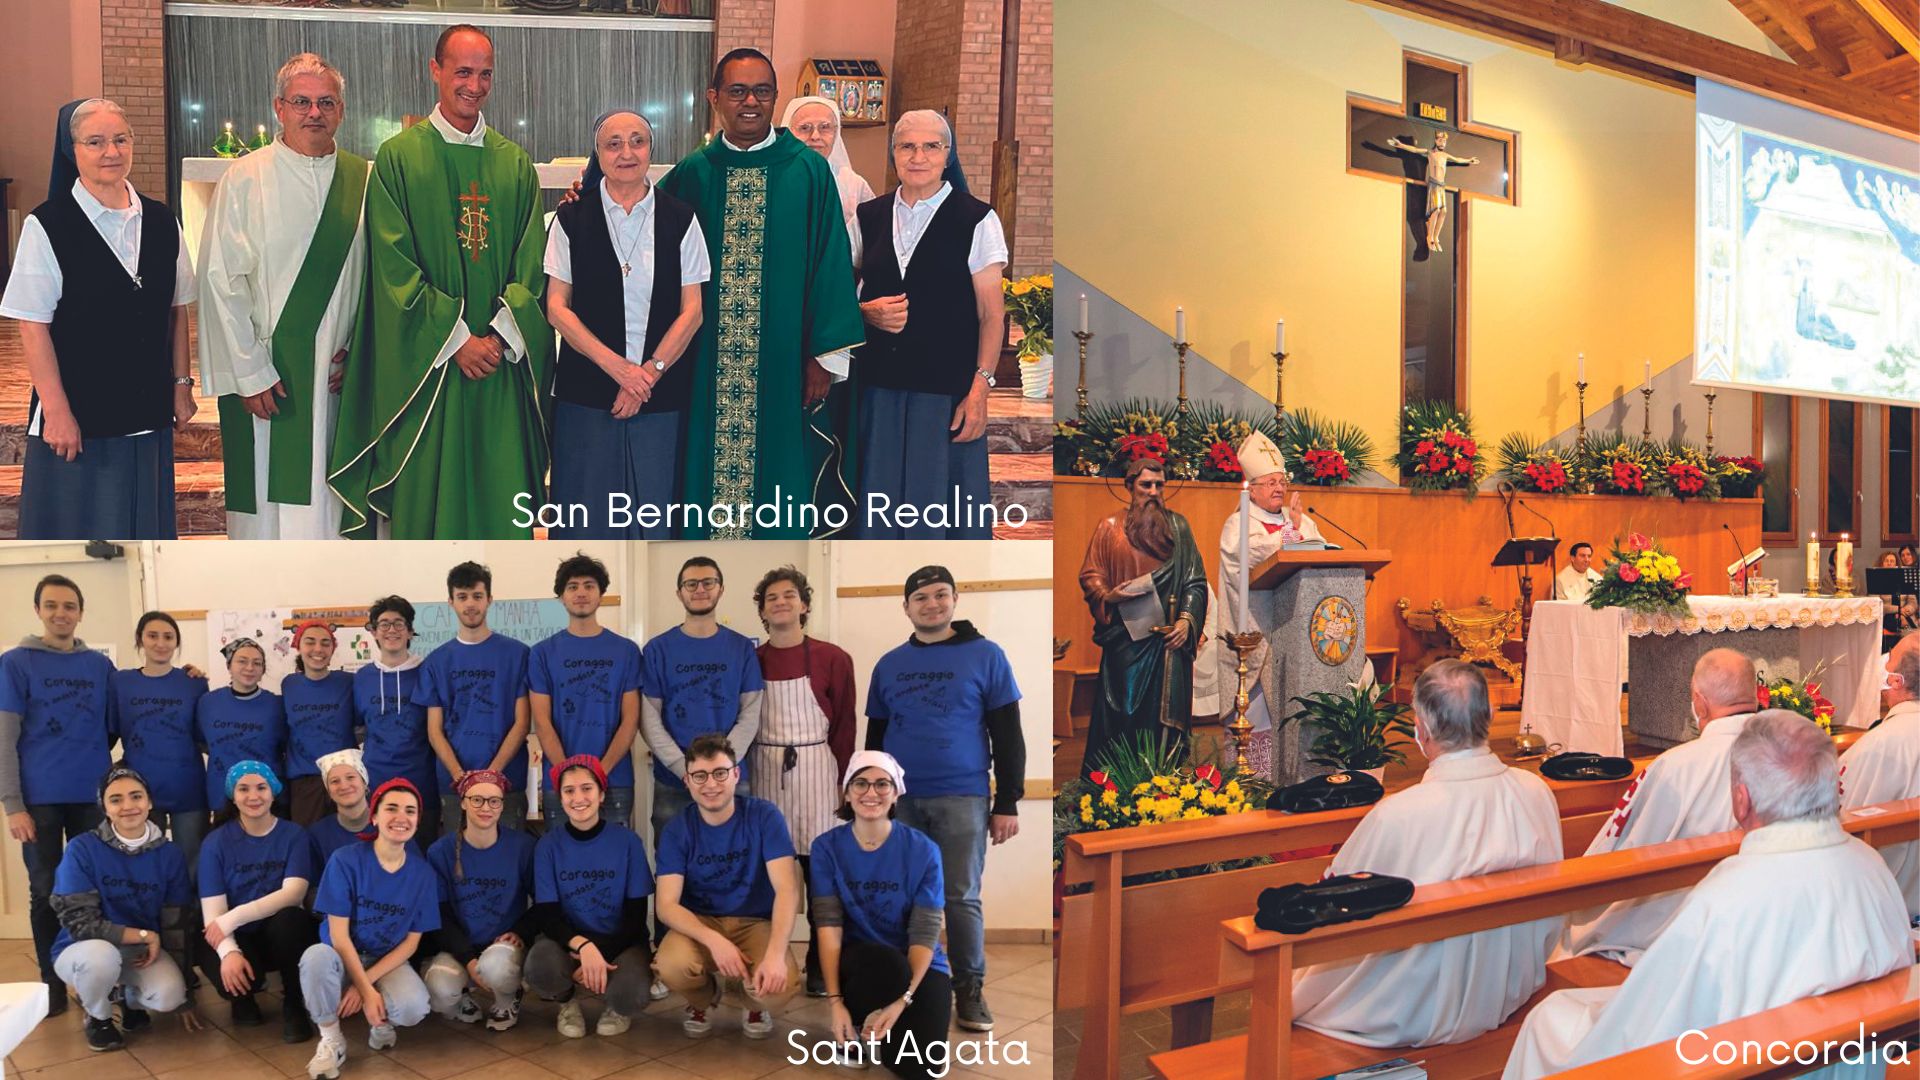 Giornate parrocchiali, i racconti da San Bernardino Realino, Concordia e Cibeno